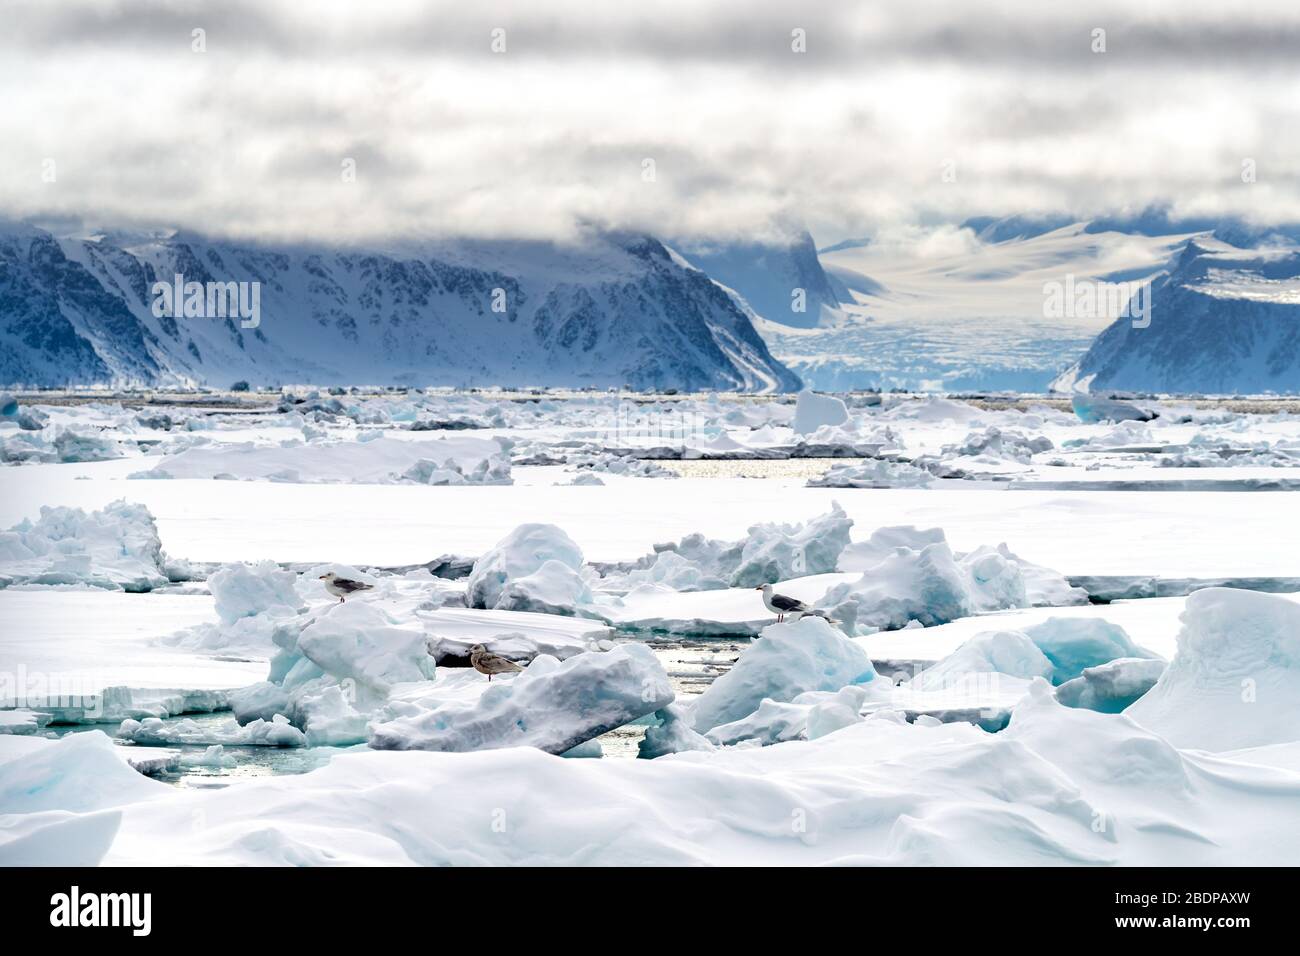 Piquet dans le cercle arctique à 80 degrés au nord, avec les montagnes et les glaciers de Svalbard dans le fond et les goélands sur la glace au premier plan Banque D'Images